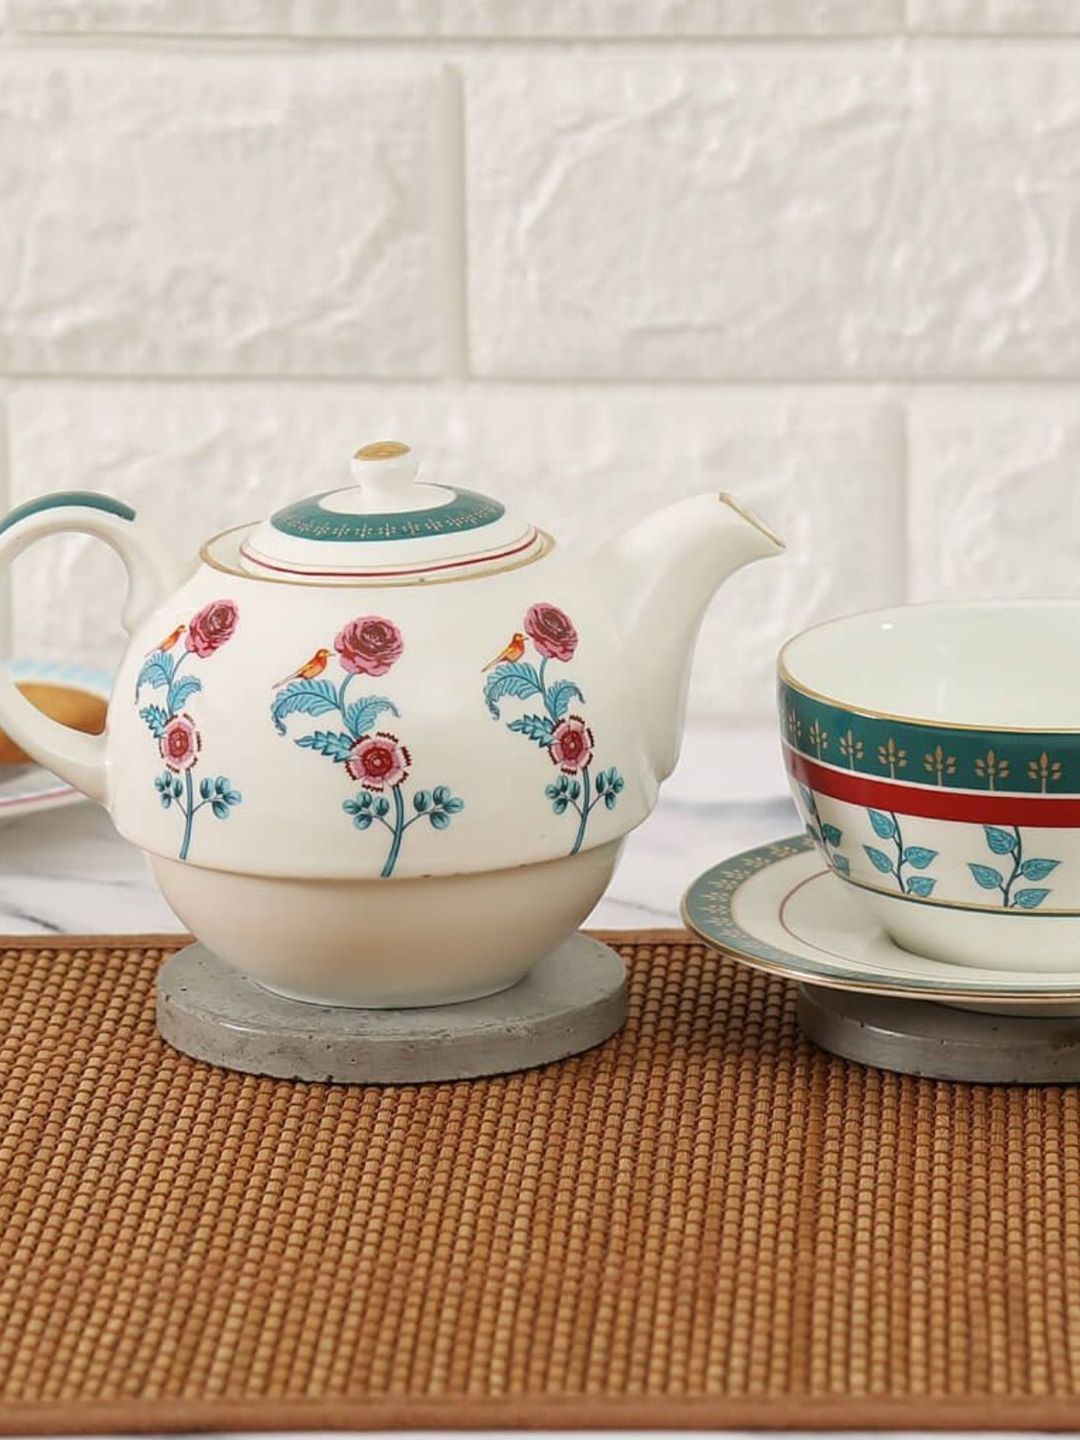 India Circus Set of 3 Blue & White Printed Ceramic Tea Set Price in India